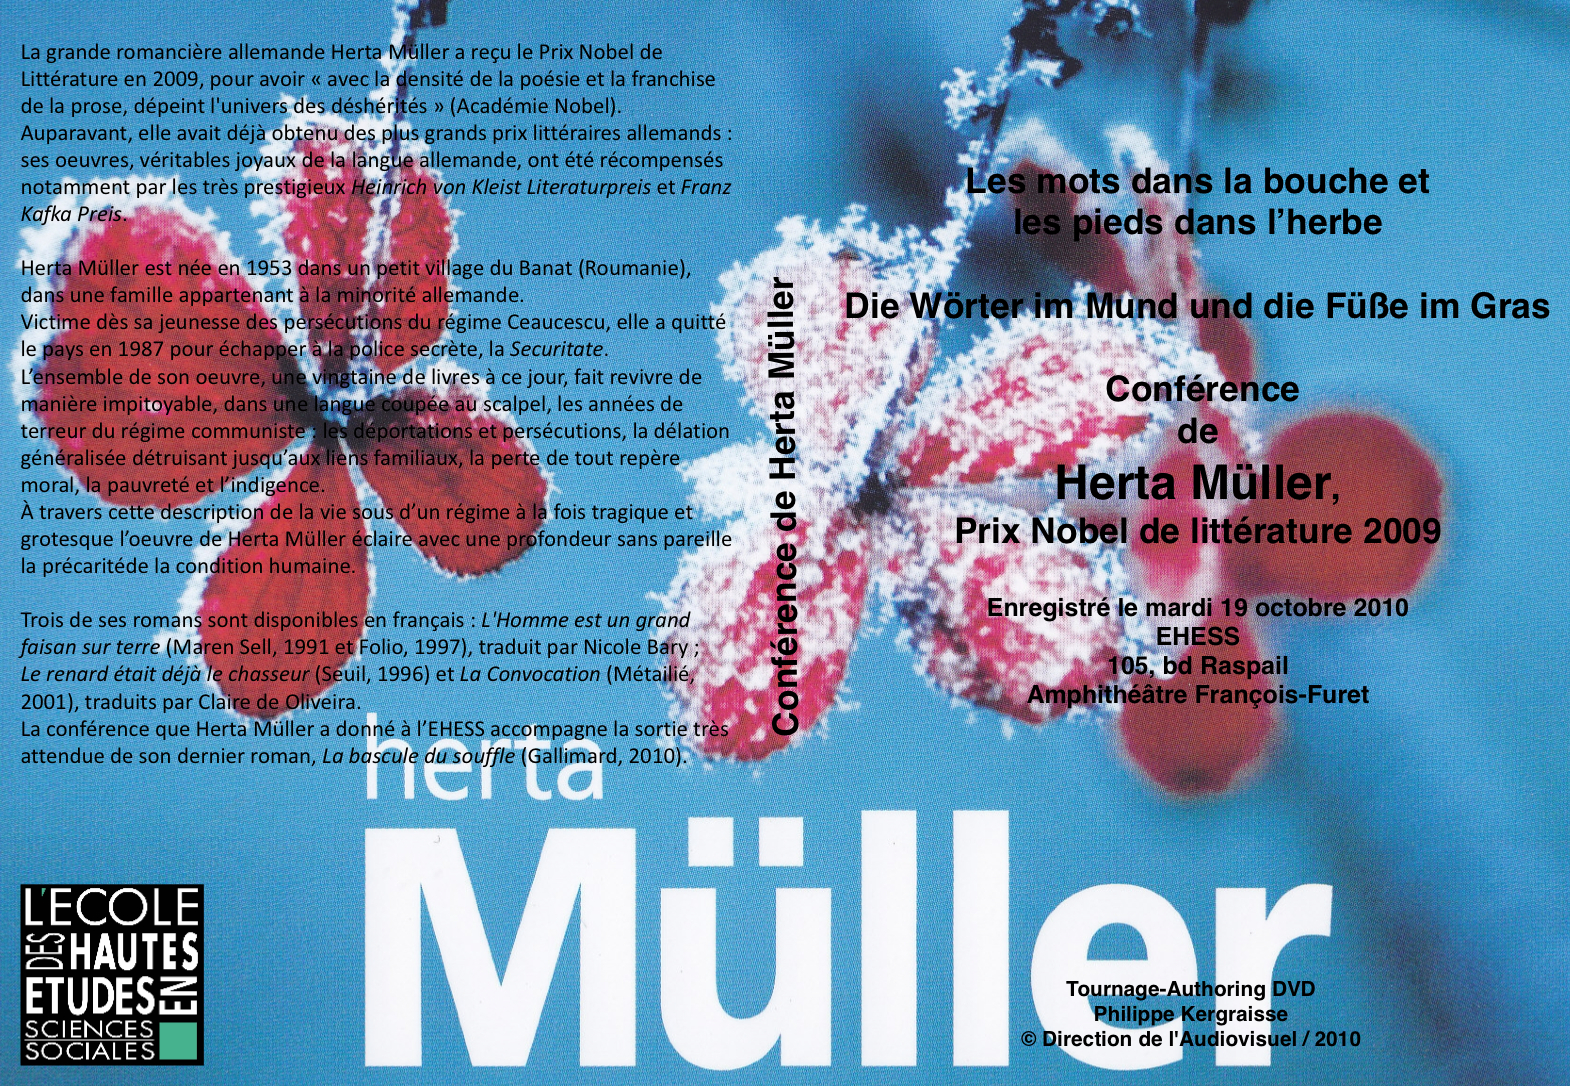 Conférence de Herta Müller, Prix Nobel de littérature 2009
2ème partie